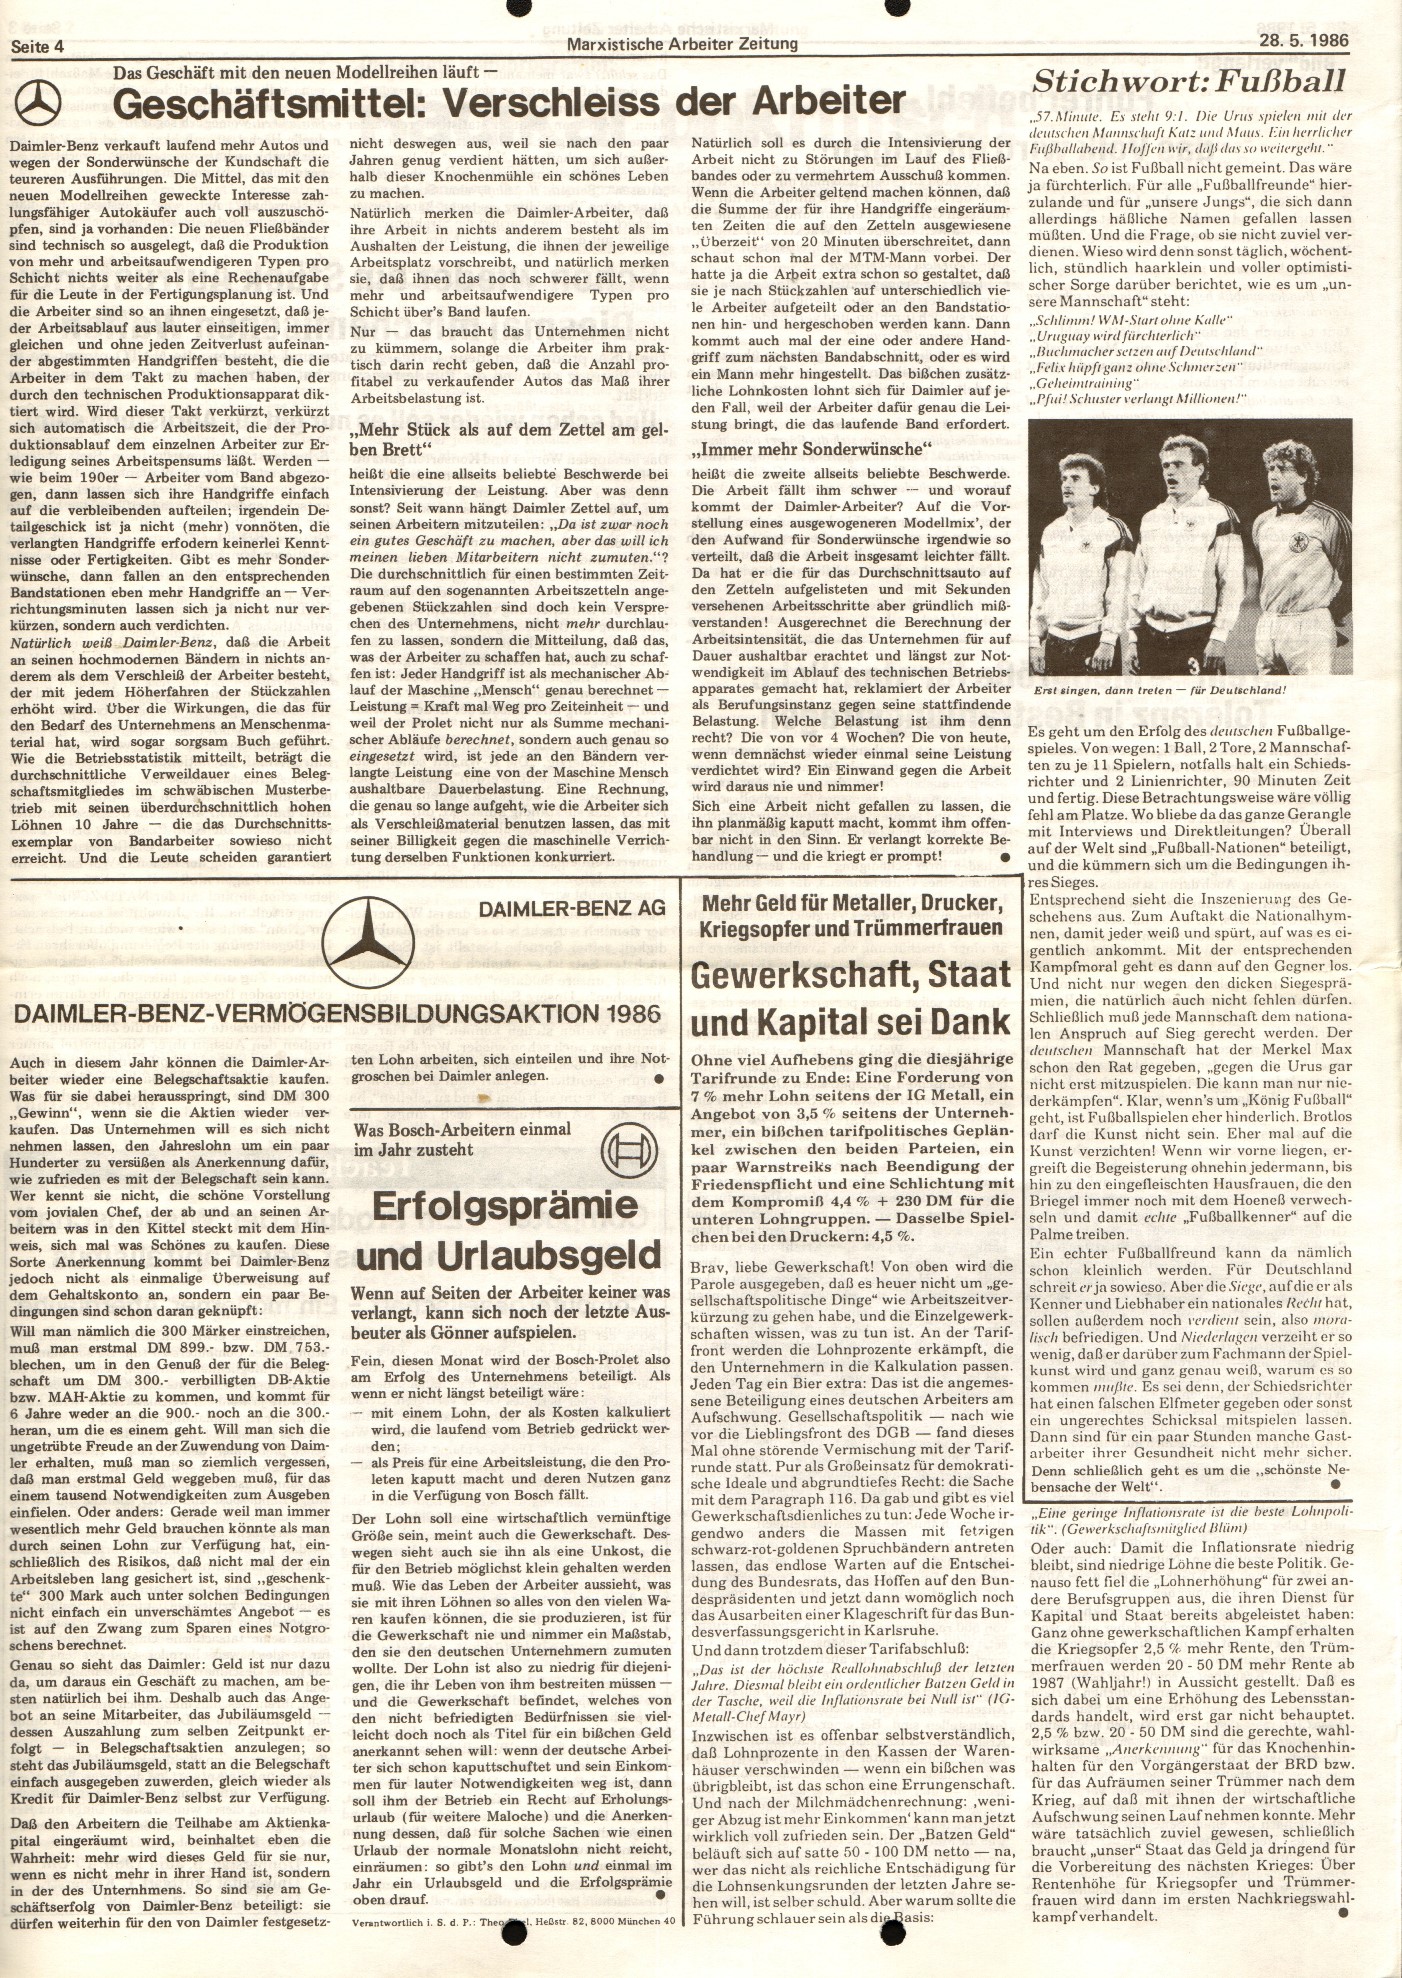 BW_MG_Marxistische_Arbeiterzeitung_19860528_04